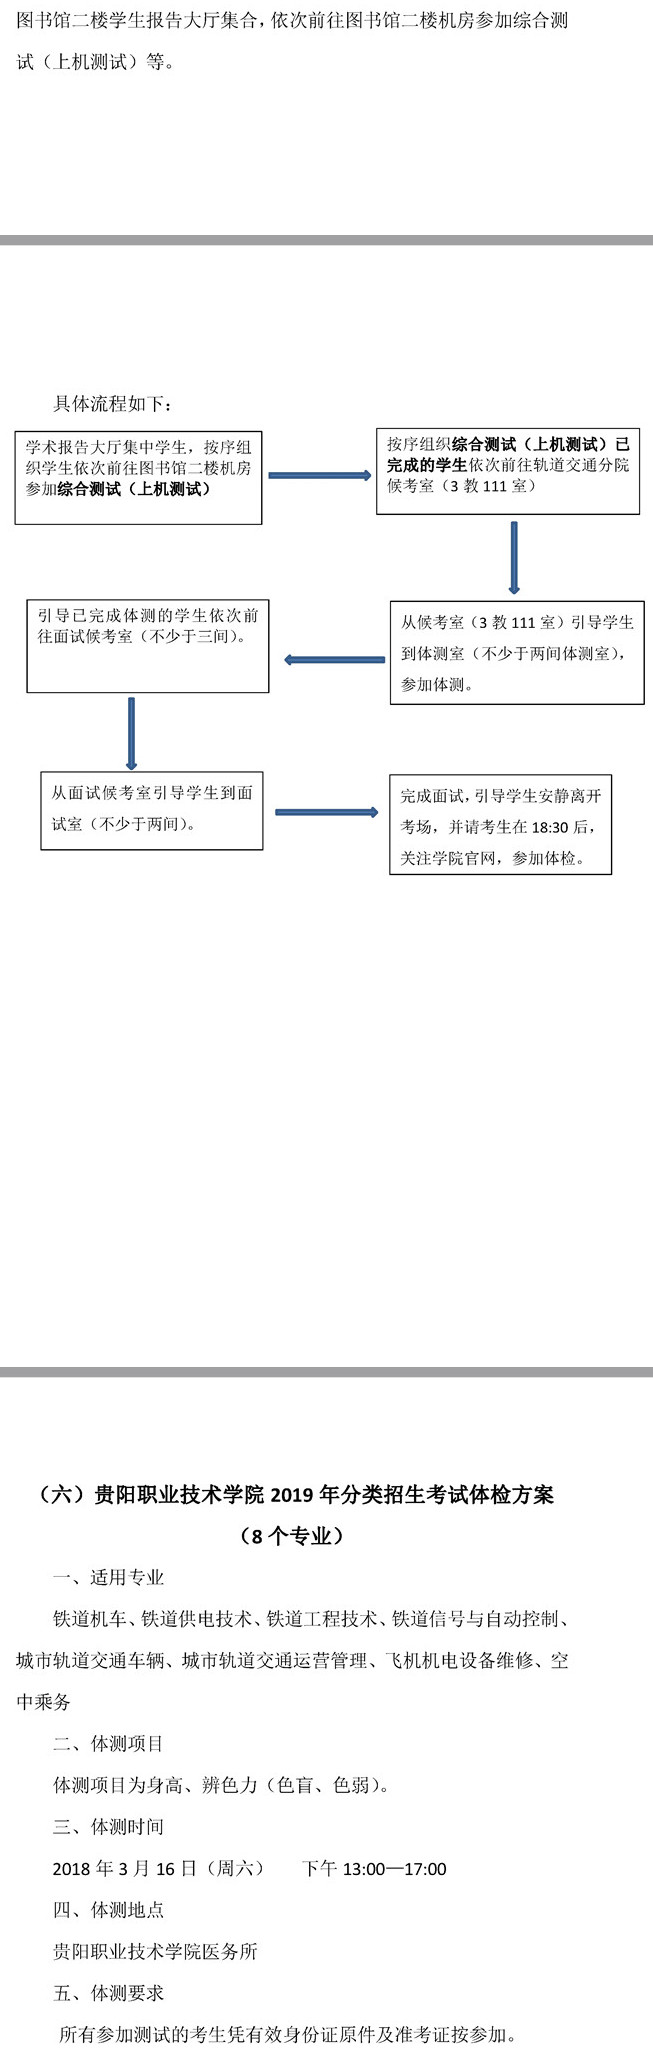 2019年贵阳职业技术学院分类招生考试职业技能测试方案3.jpg